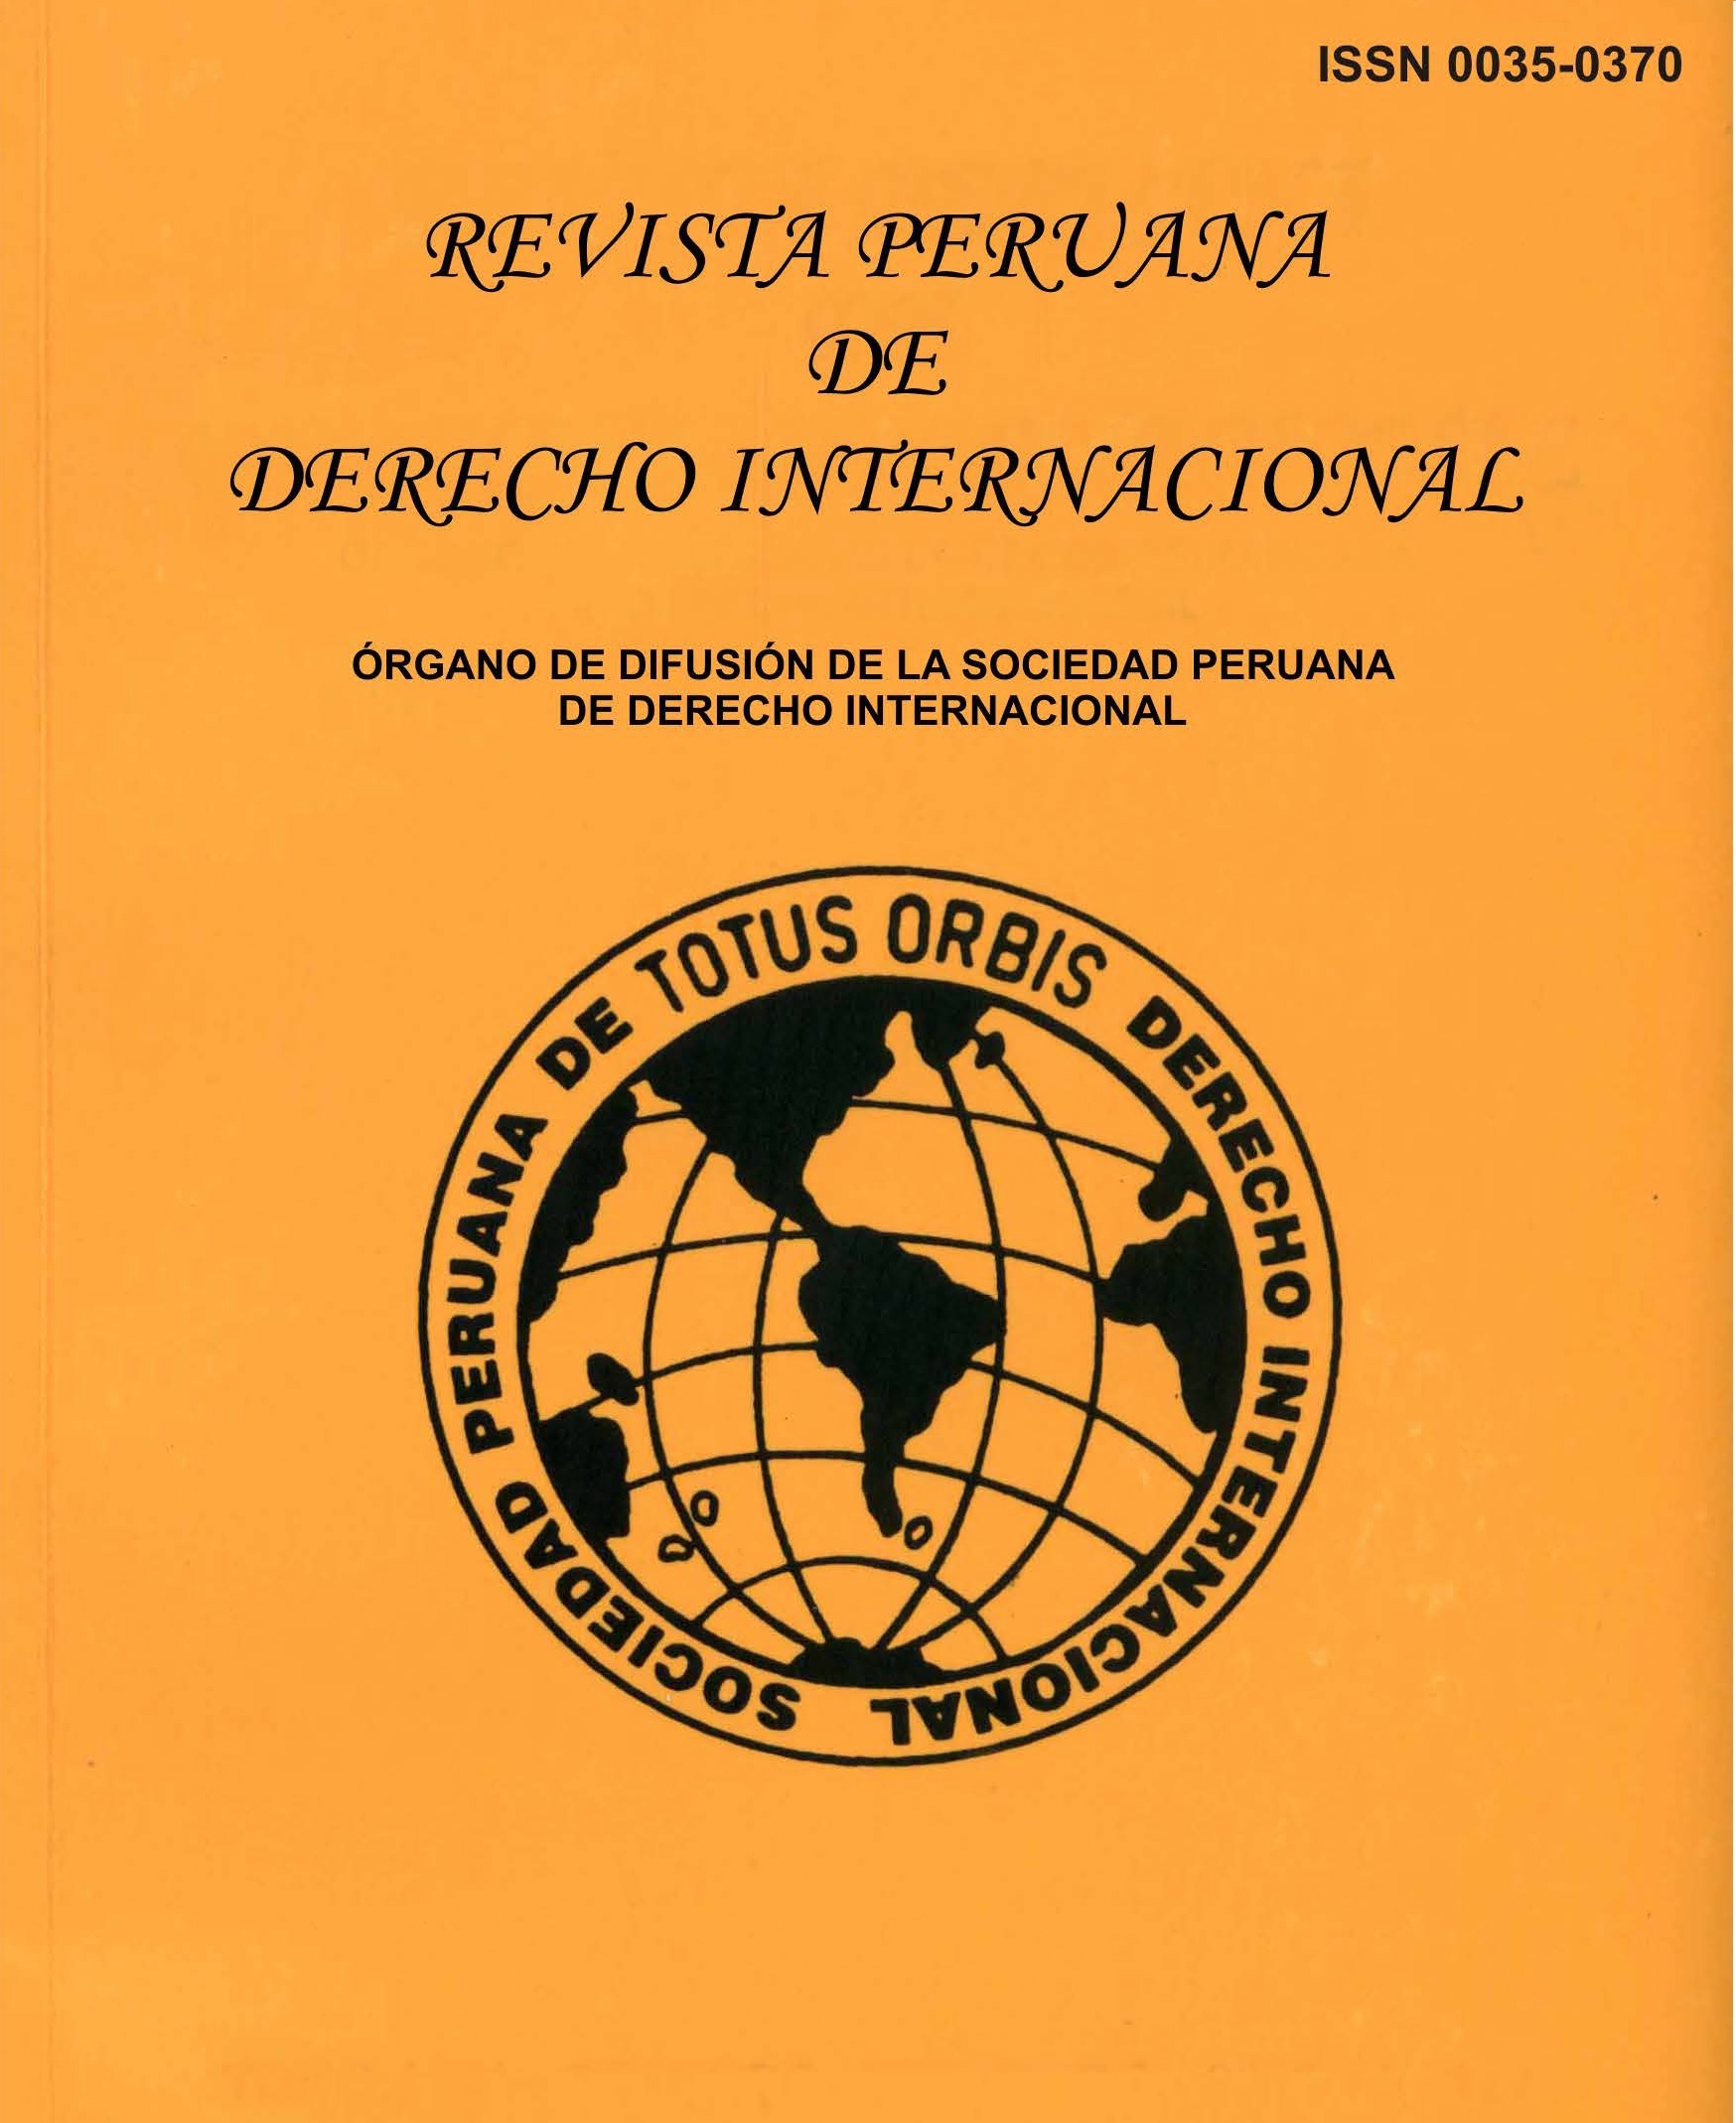 					Ver Tomo LXIV Enero – Junio 2014 N° 150, Revista Peruana de Derecho Internacional
				